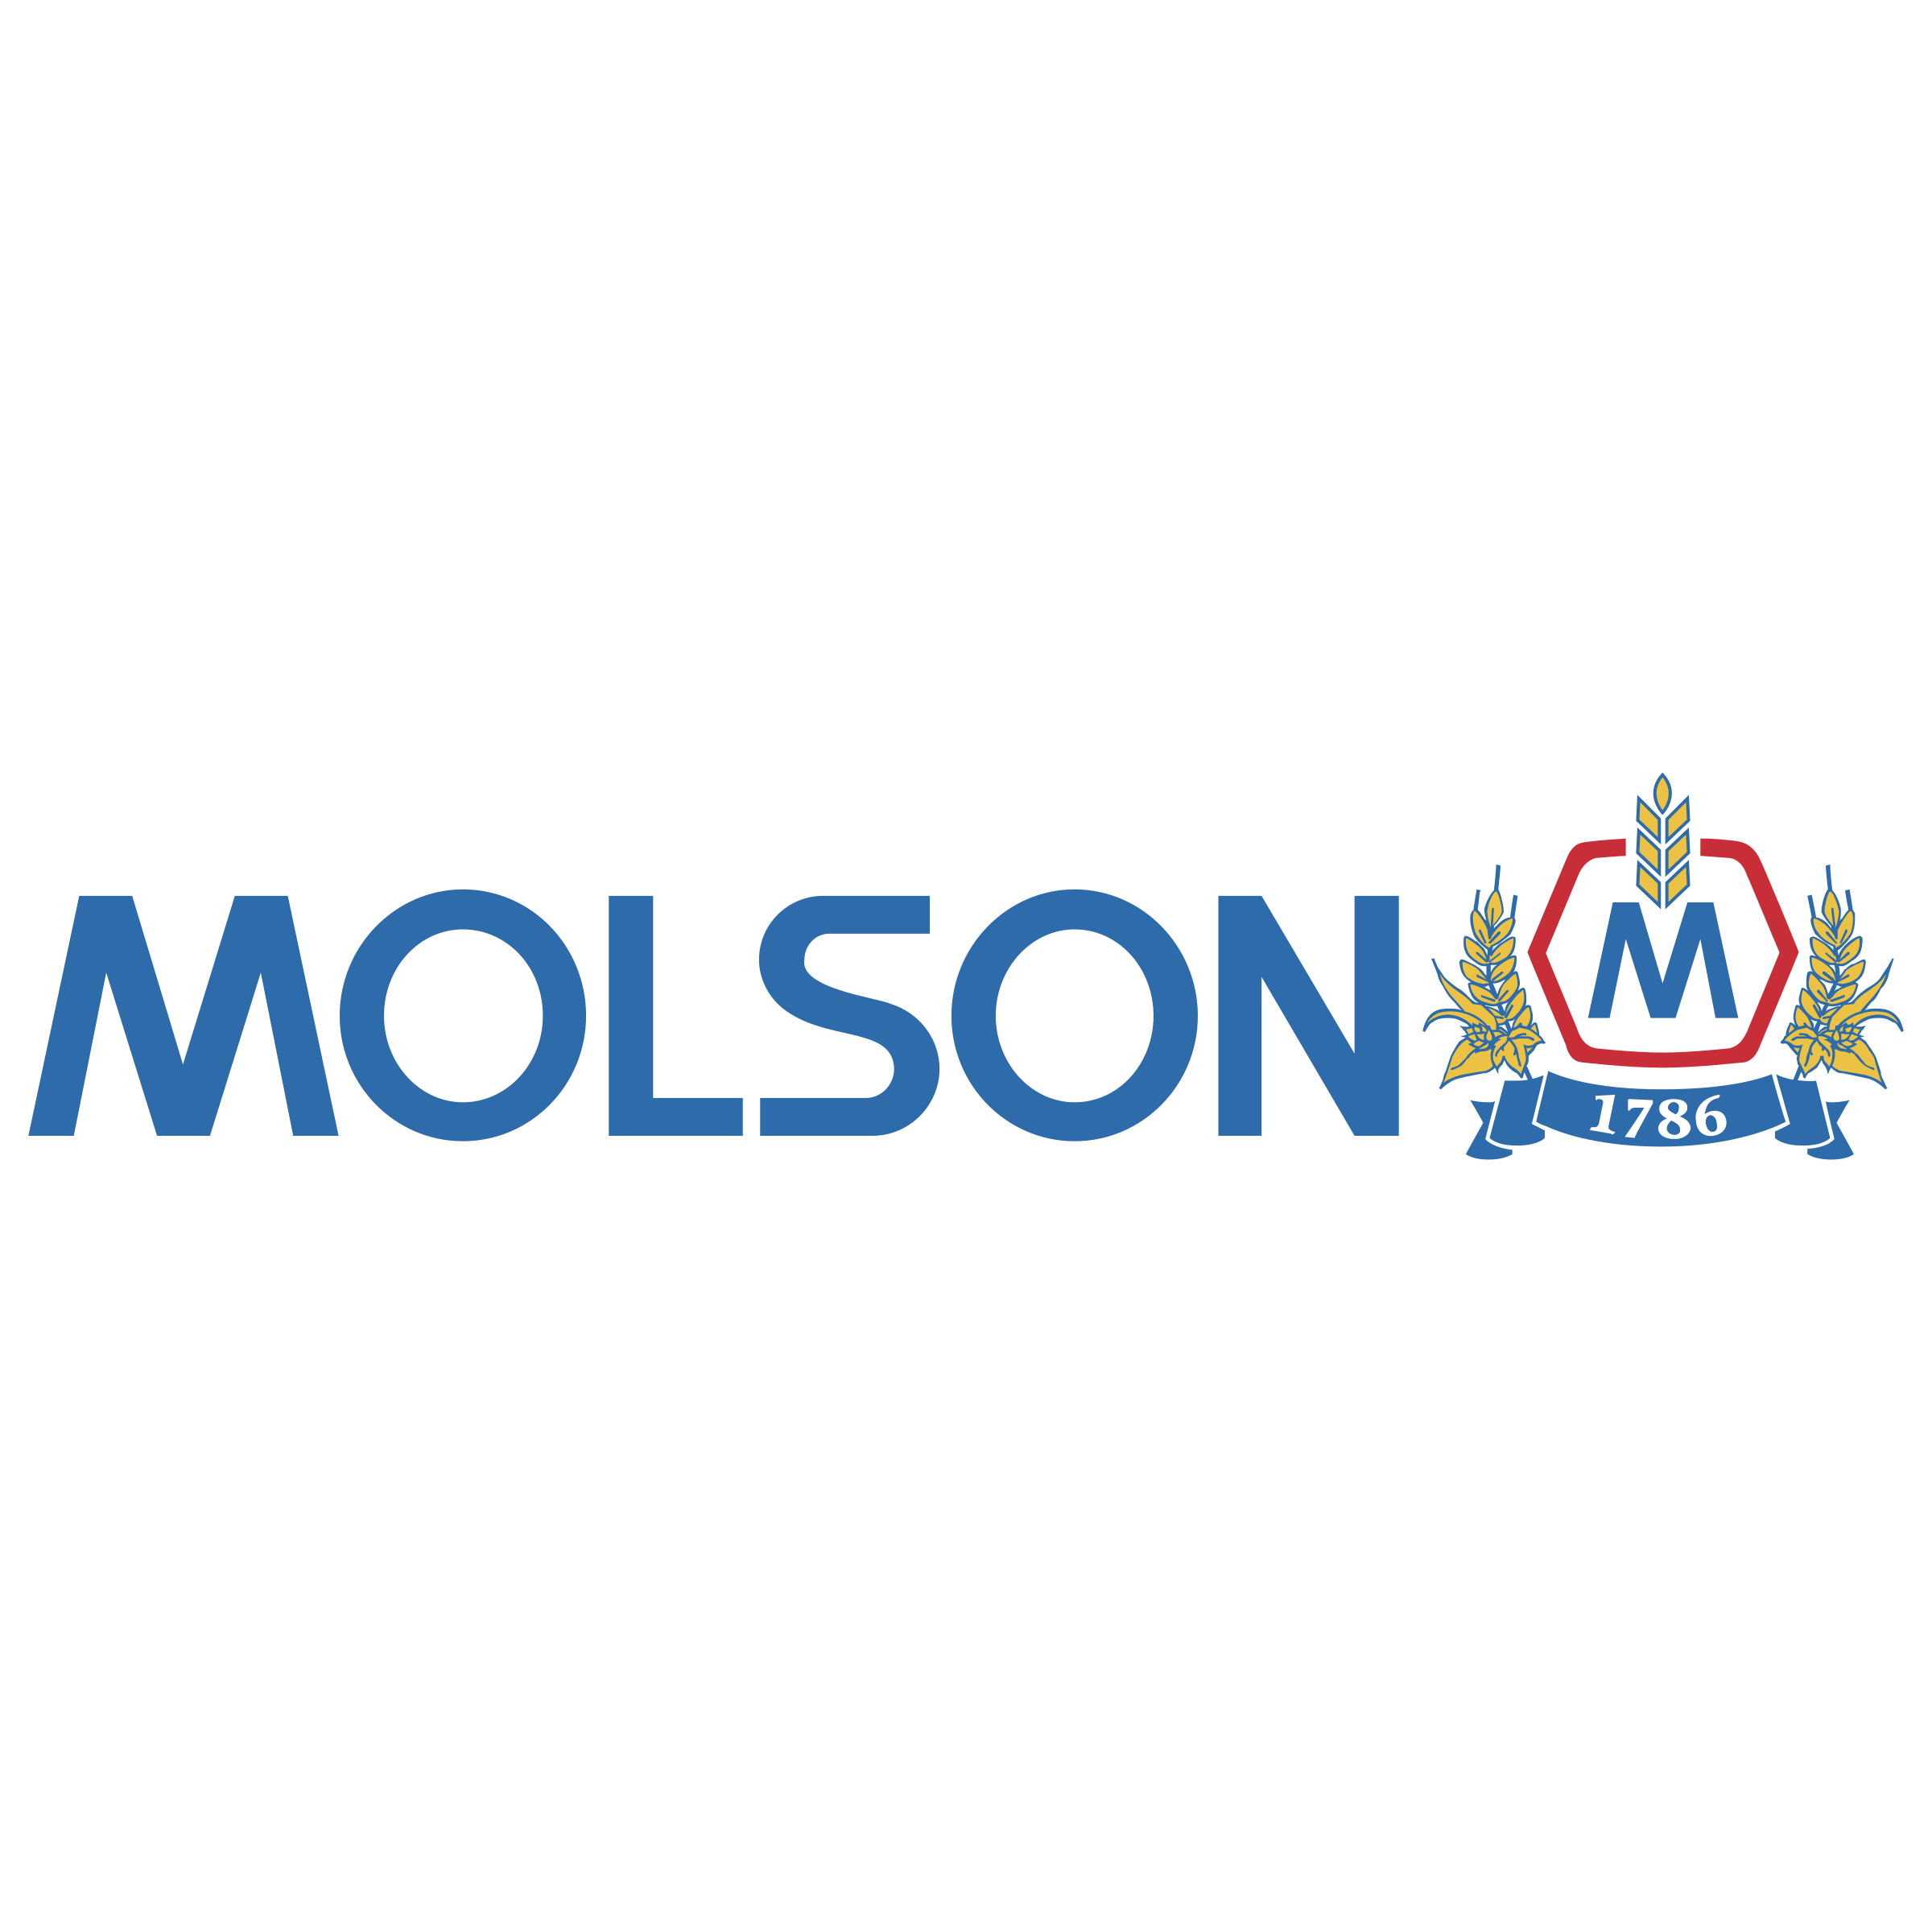 molson-logo-png-transparent.png